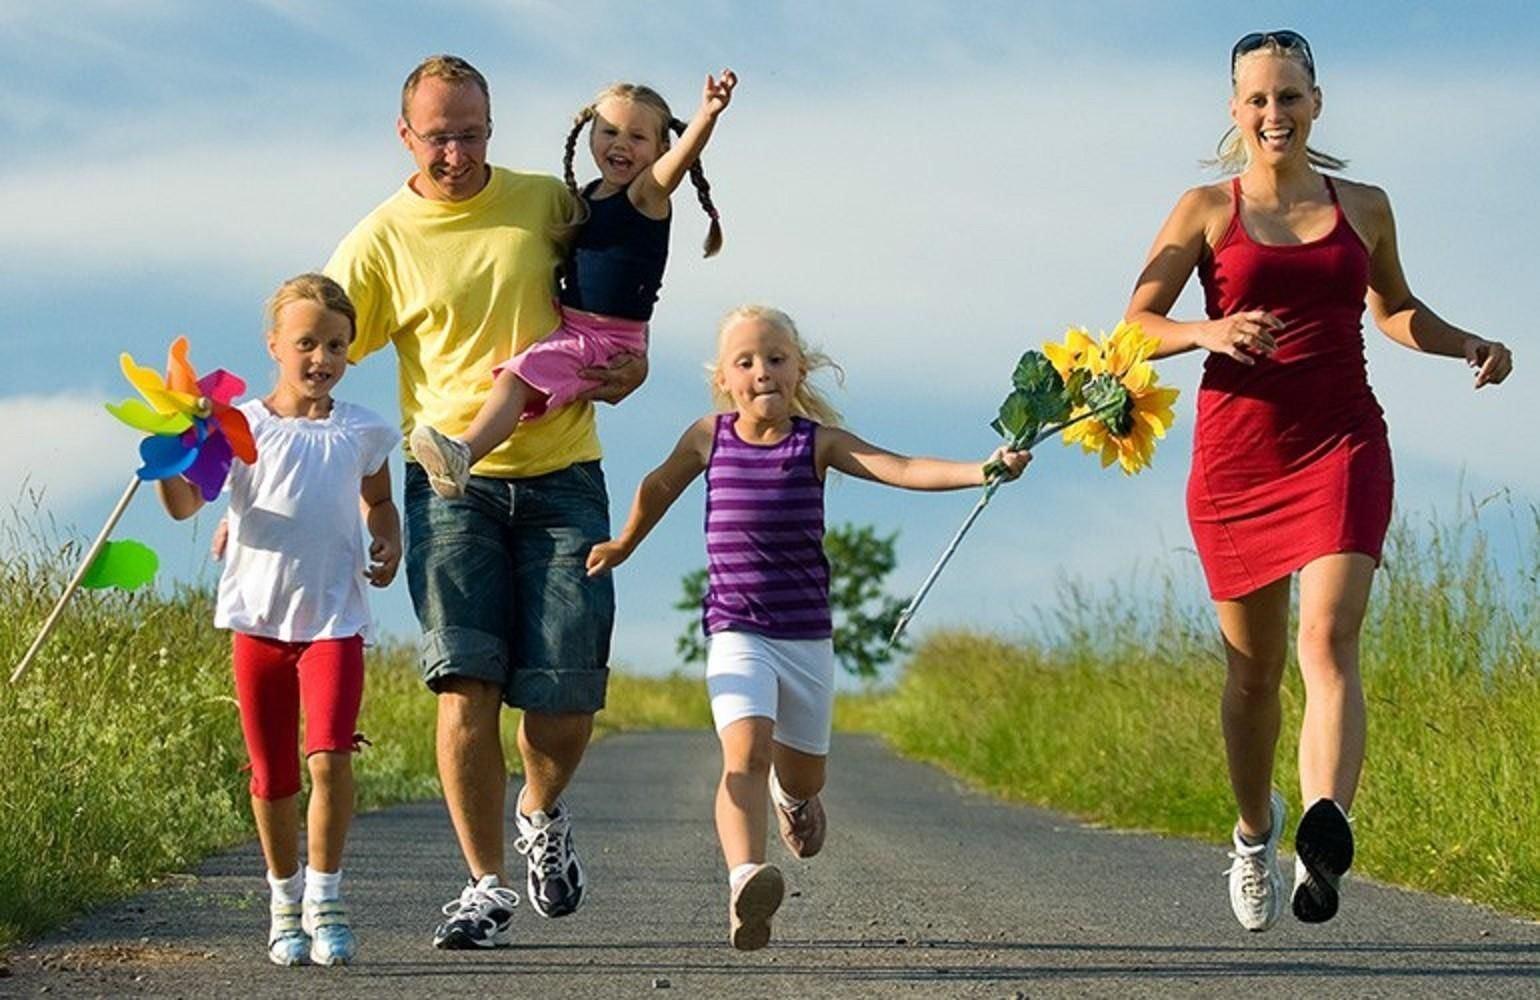 Здоровый образ жизни как средство благополучия личности. Здоровый образ жизни. Спортивная семья. Активный и здоровый образ жизни. Спортивная семья с детьми.